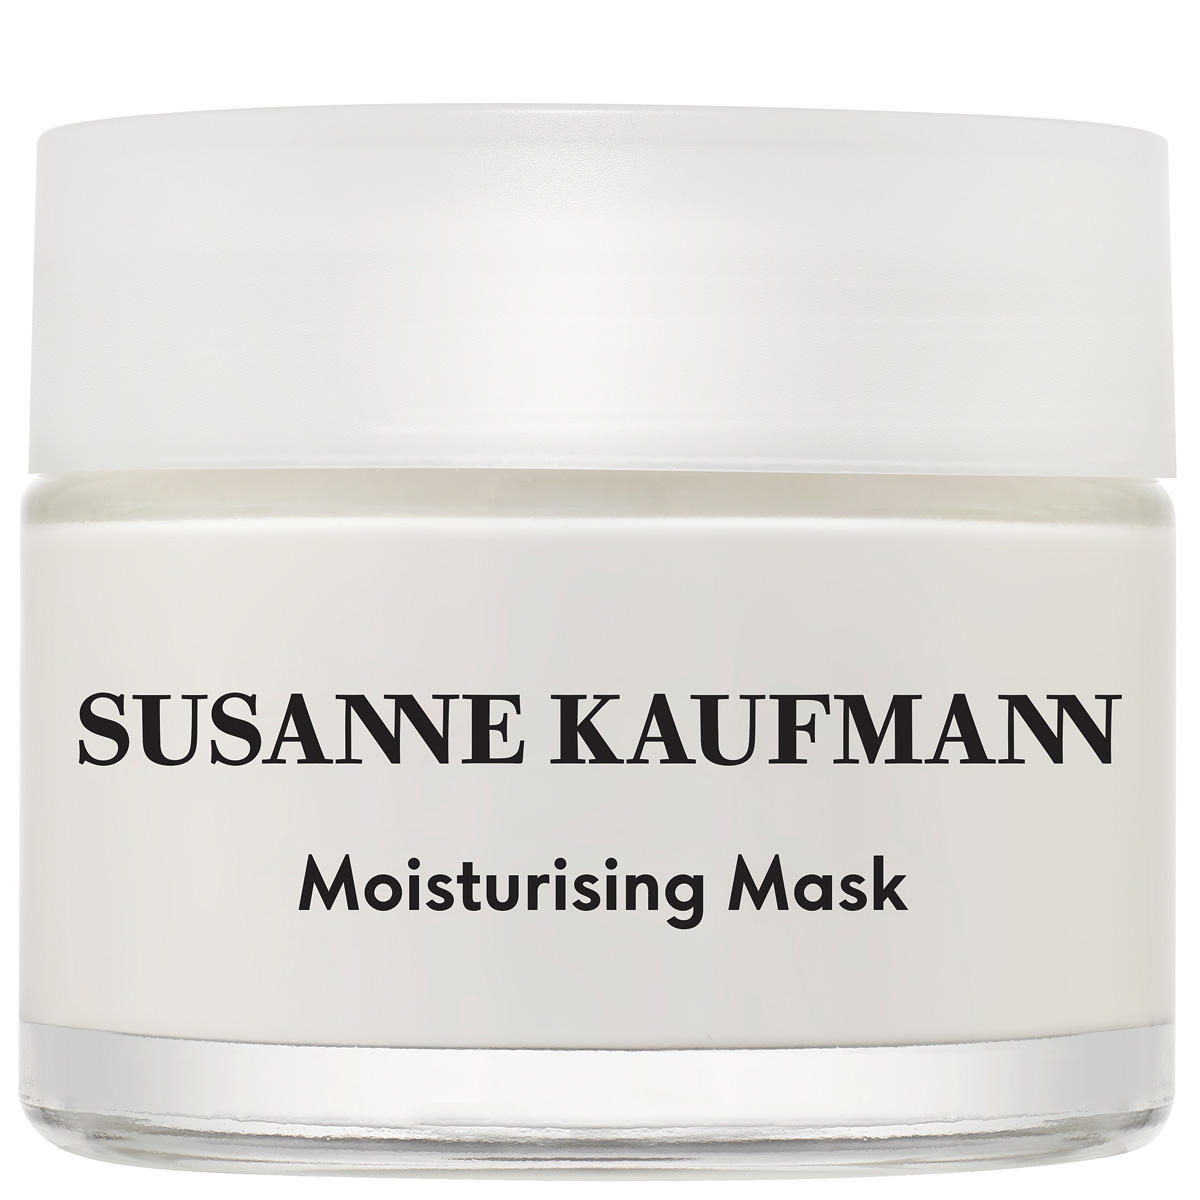 Susanne Kaufmann Feuchtigkeitsmaske - Moisturising Mask 50 ml - 1